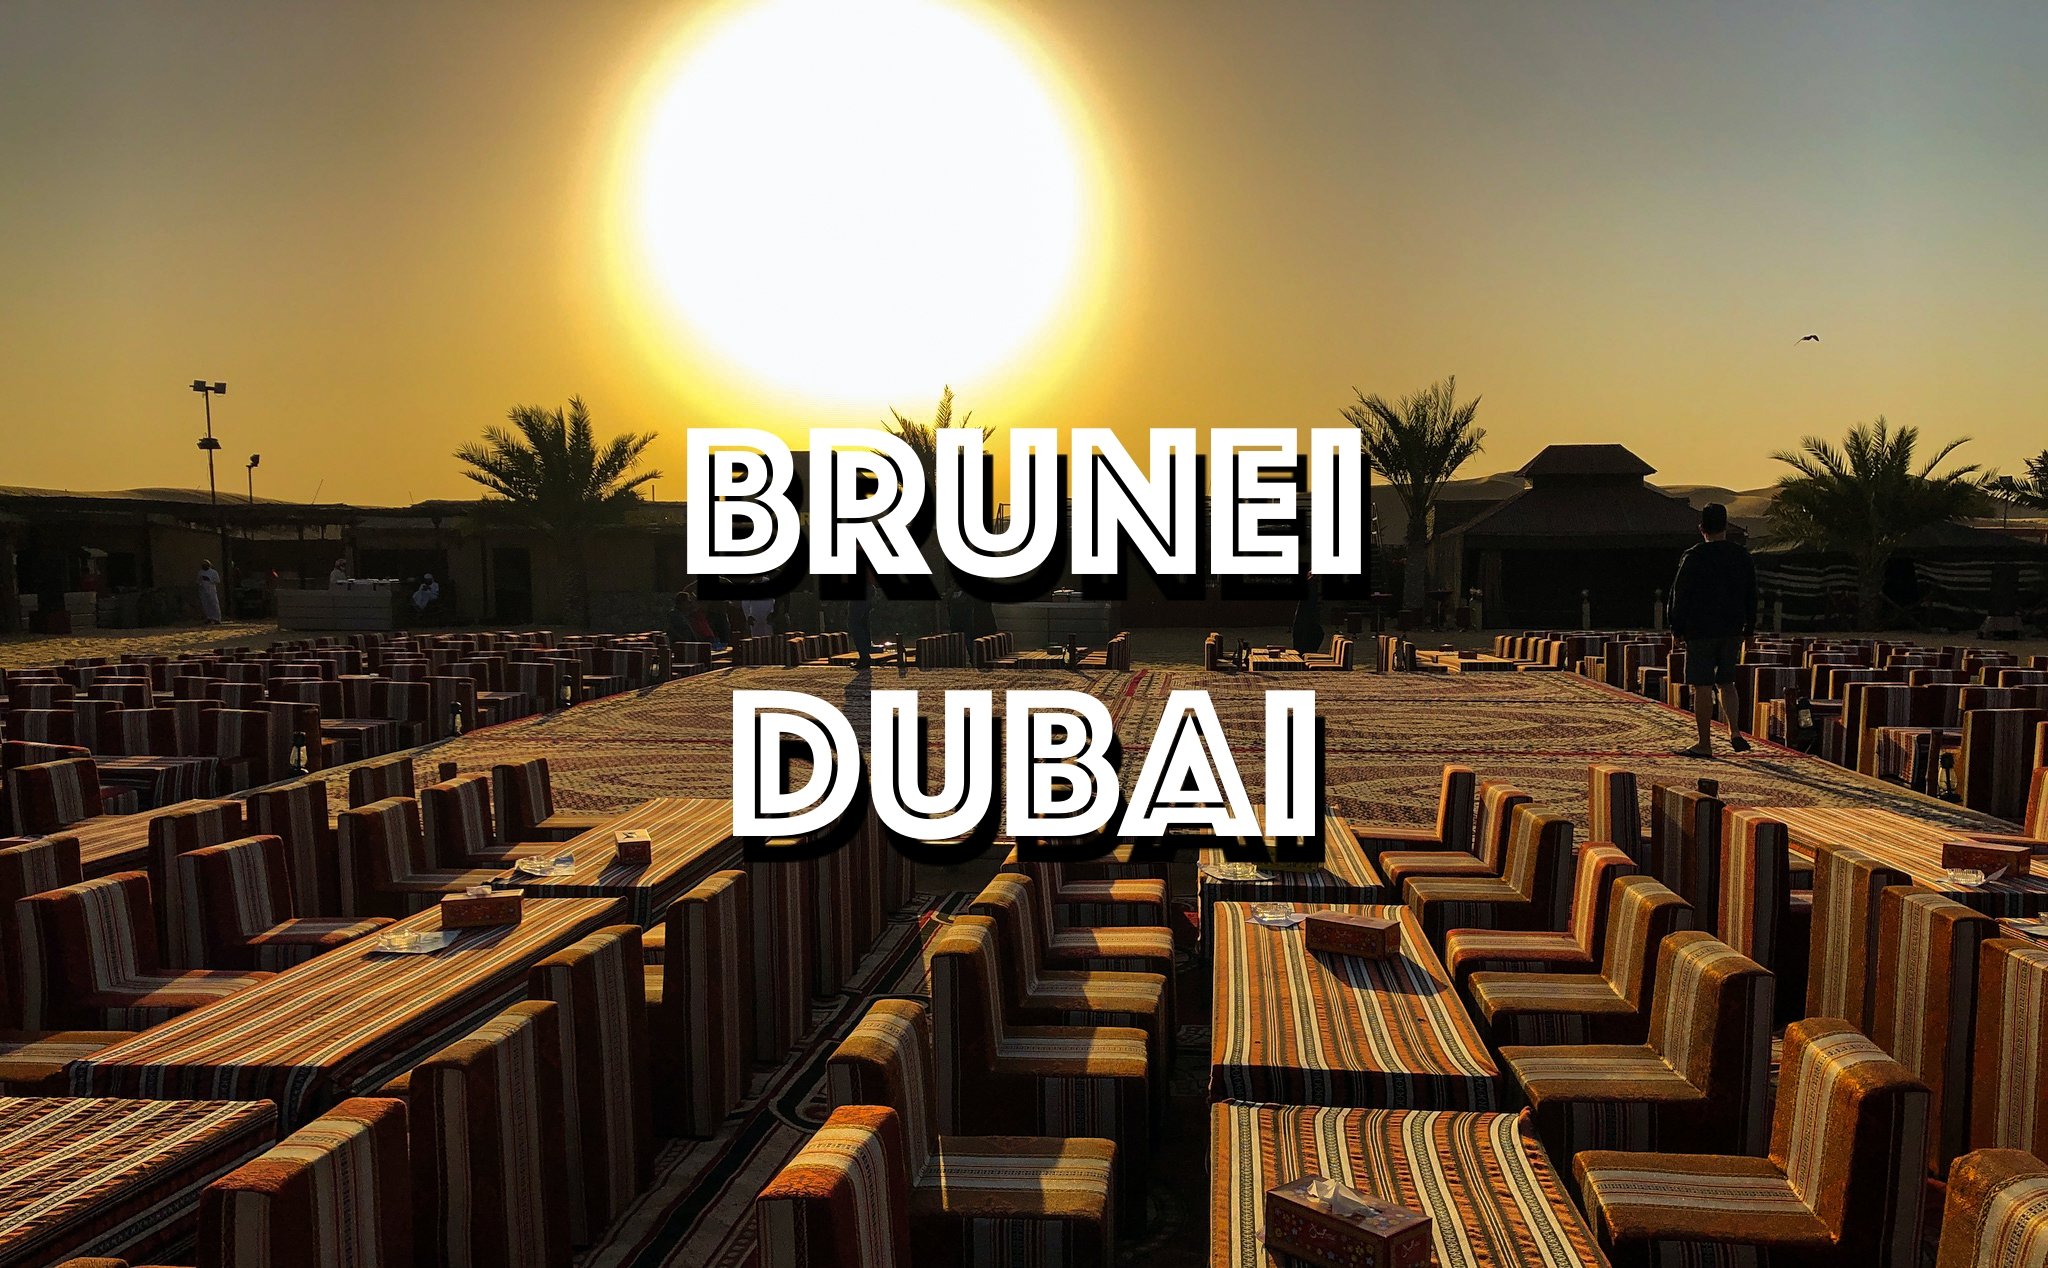 Chia sẻ du lịch Brunei-Dubai: Trải nghiệm hai quốc gia đạo Hồi và cùng giàu nhờ dầu mỏ